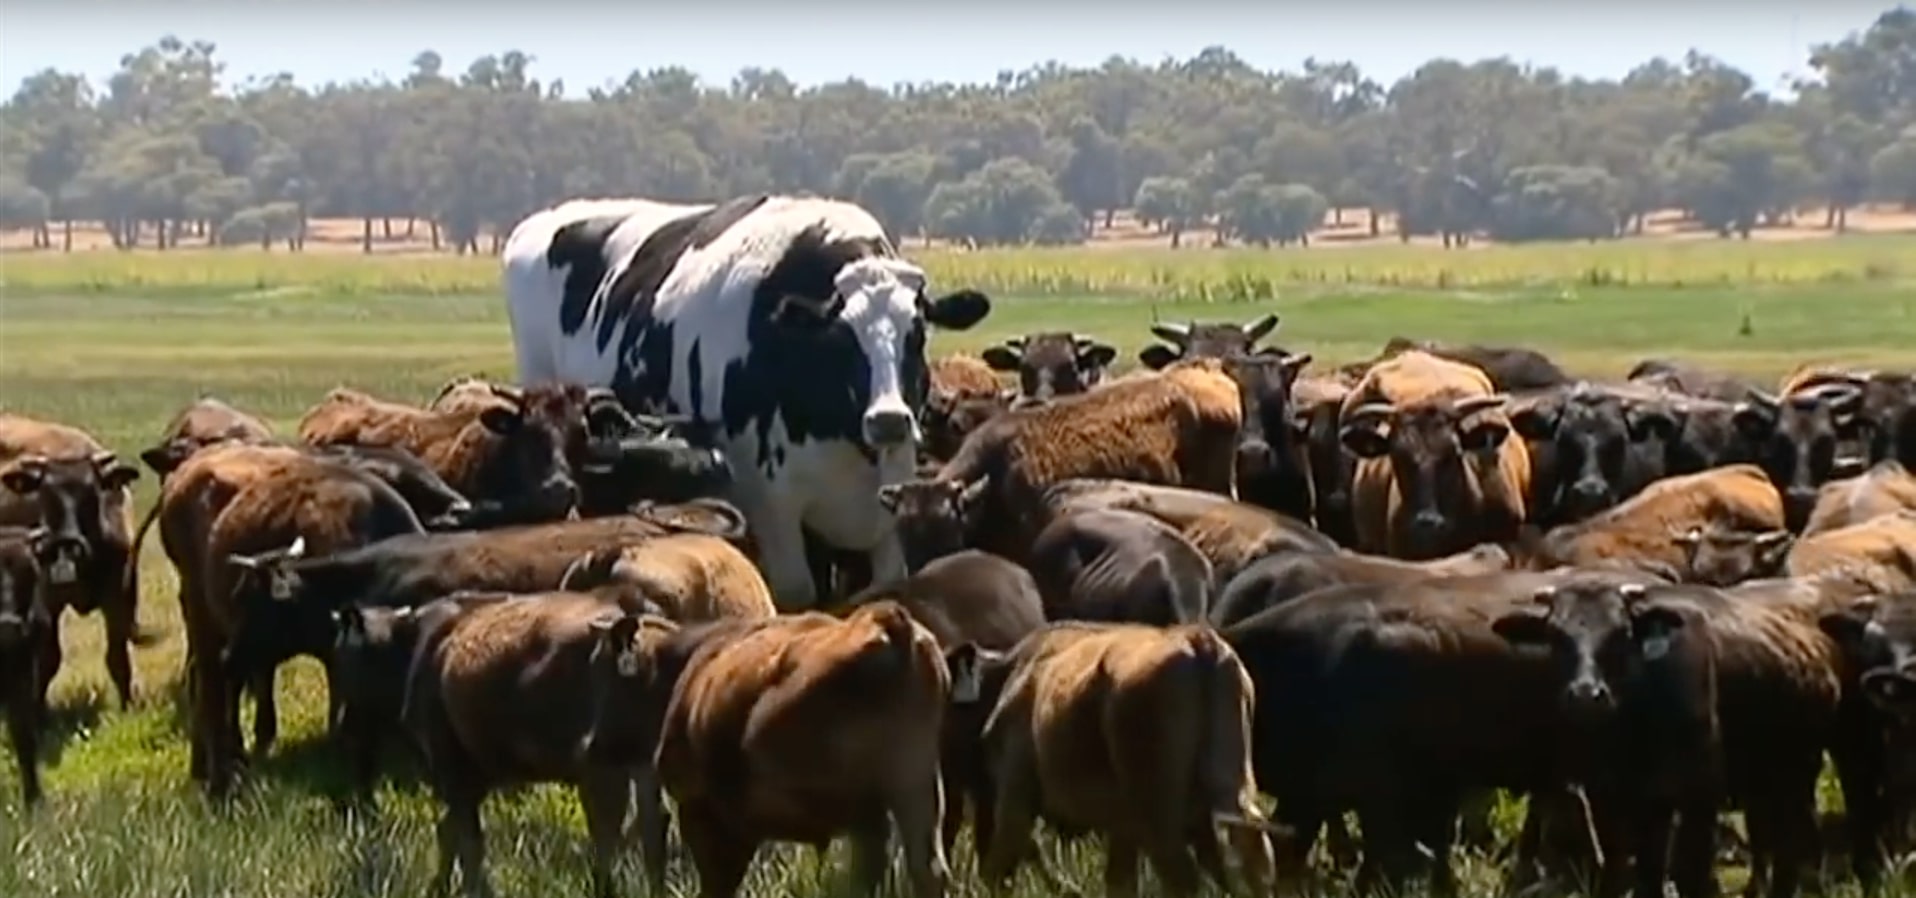 knickers vache géante